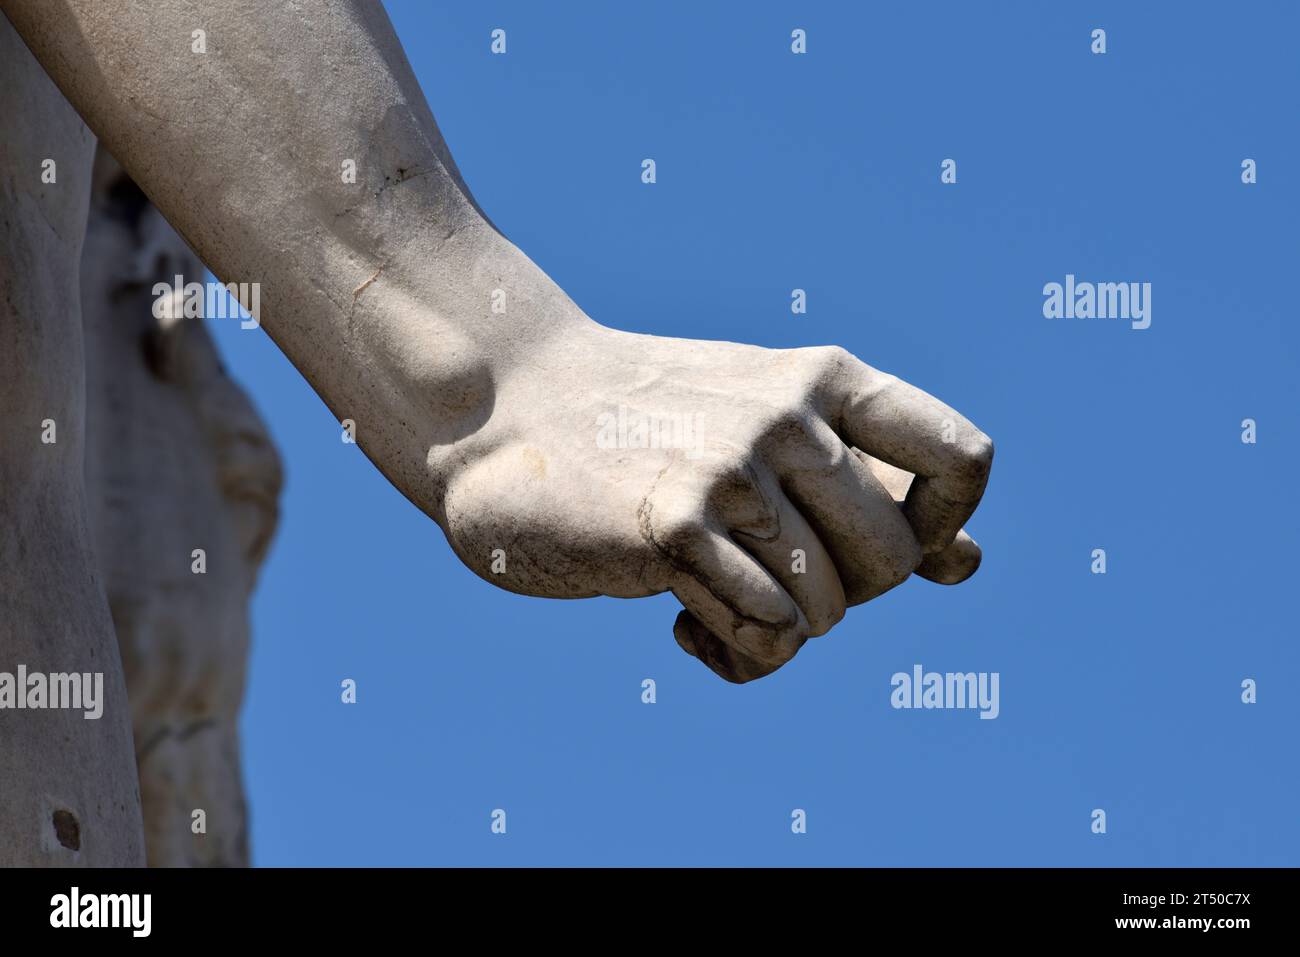 Italy, Rome, Campidoglio, statue of Pollux Stock Photo